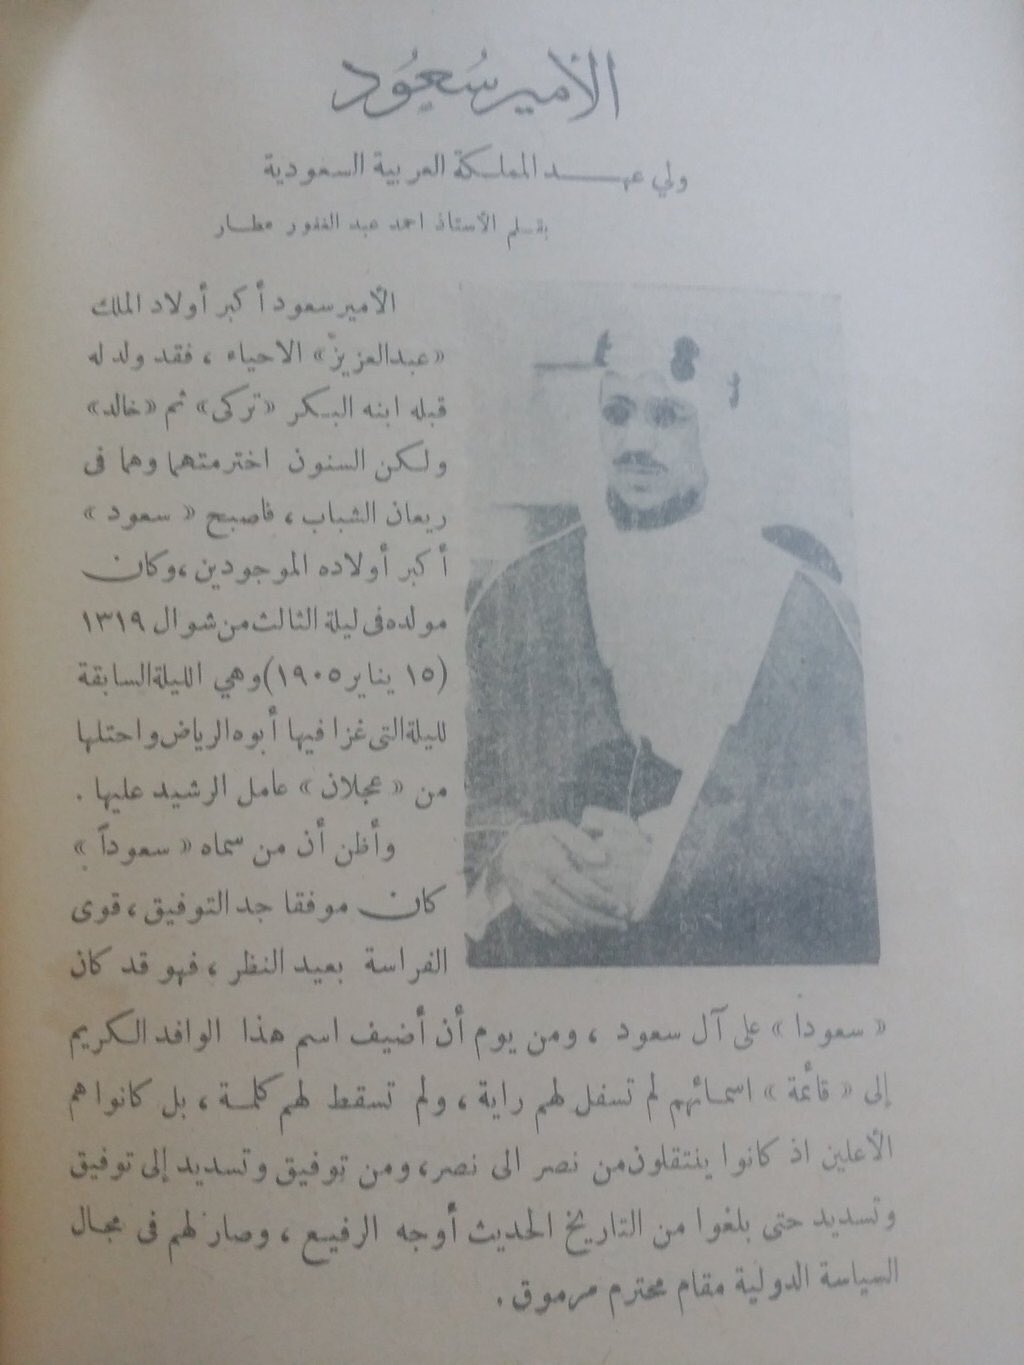 سيرة ولي العهد الأمير سعود بقلم أحمد عبدالغفار العطار2.jpg